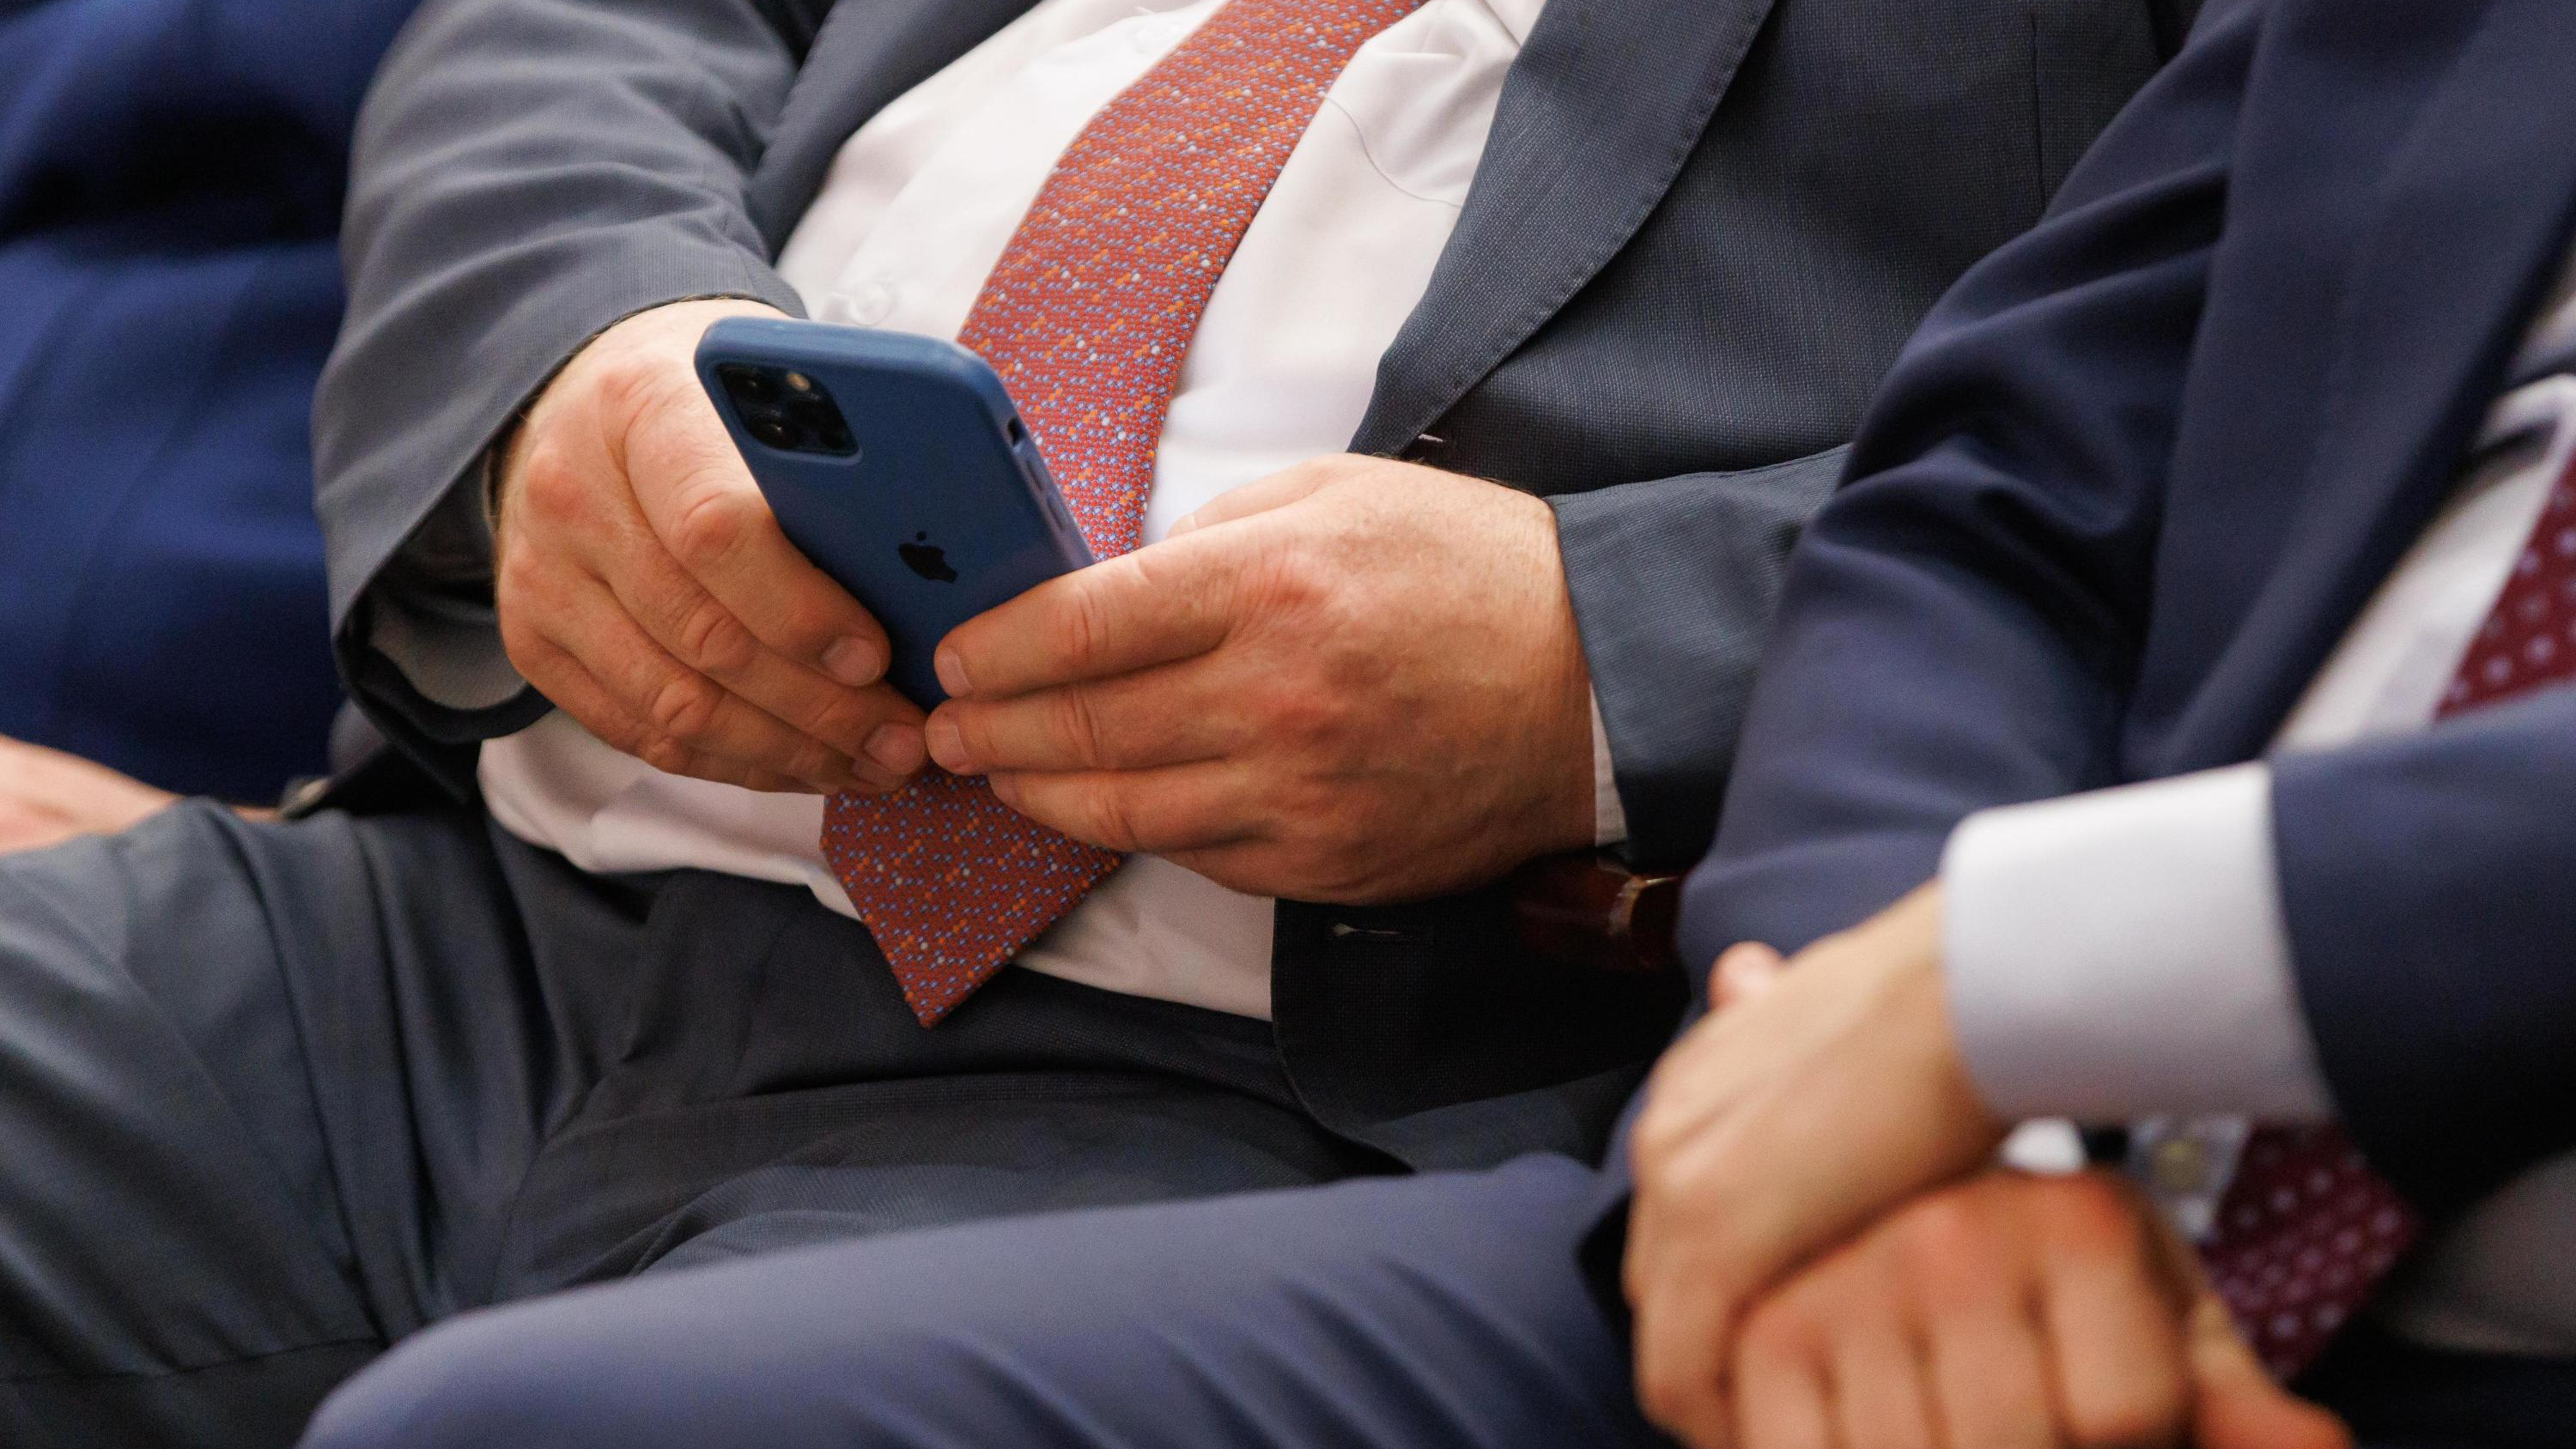 Депутат Госдумы заявил, что Google и Apple могут отключить смартфоны россиянам. Что, правда могут?